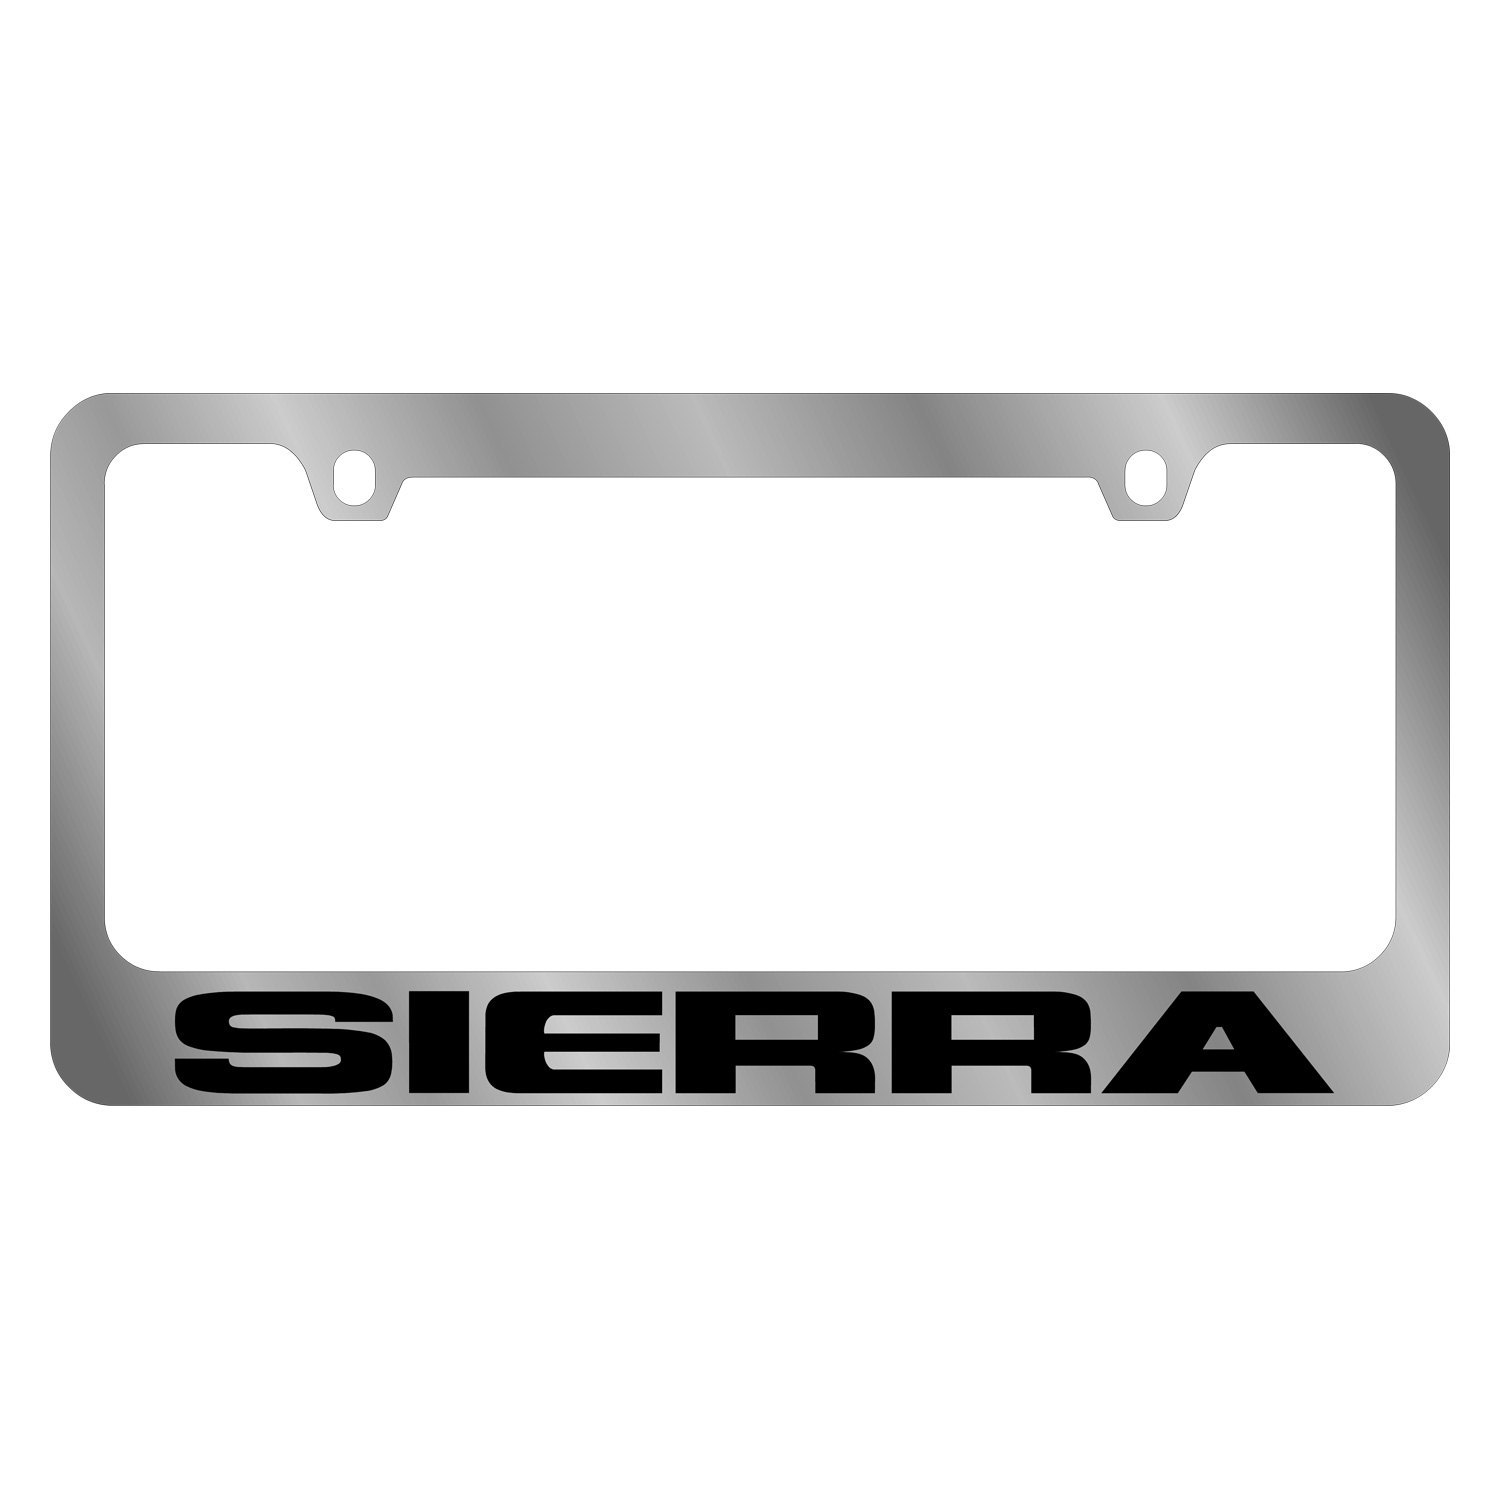 Gmc sierra license plate frames #2